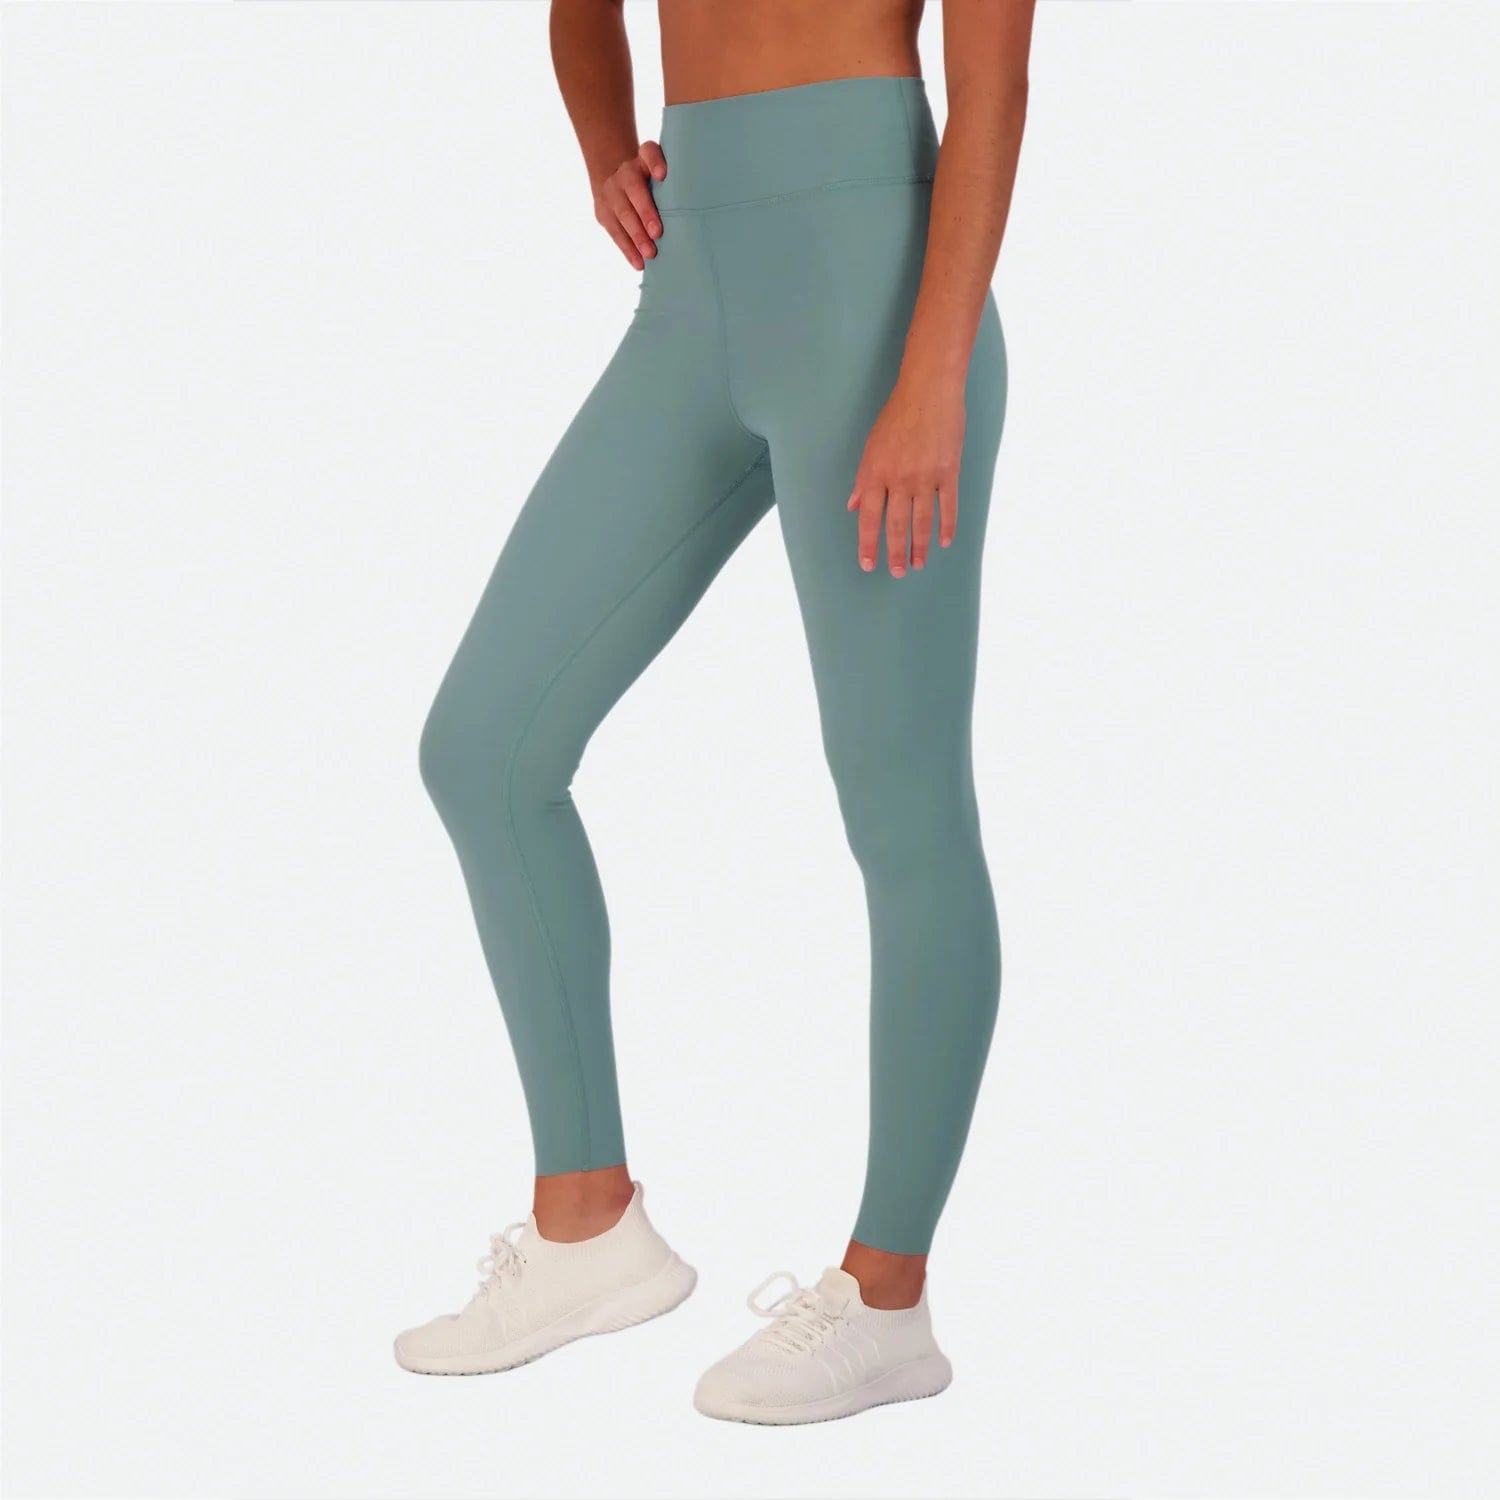 Nike Women's Dri-Fit One Mid Rise Camo Leggings (Medium Olive/White, Large)  